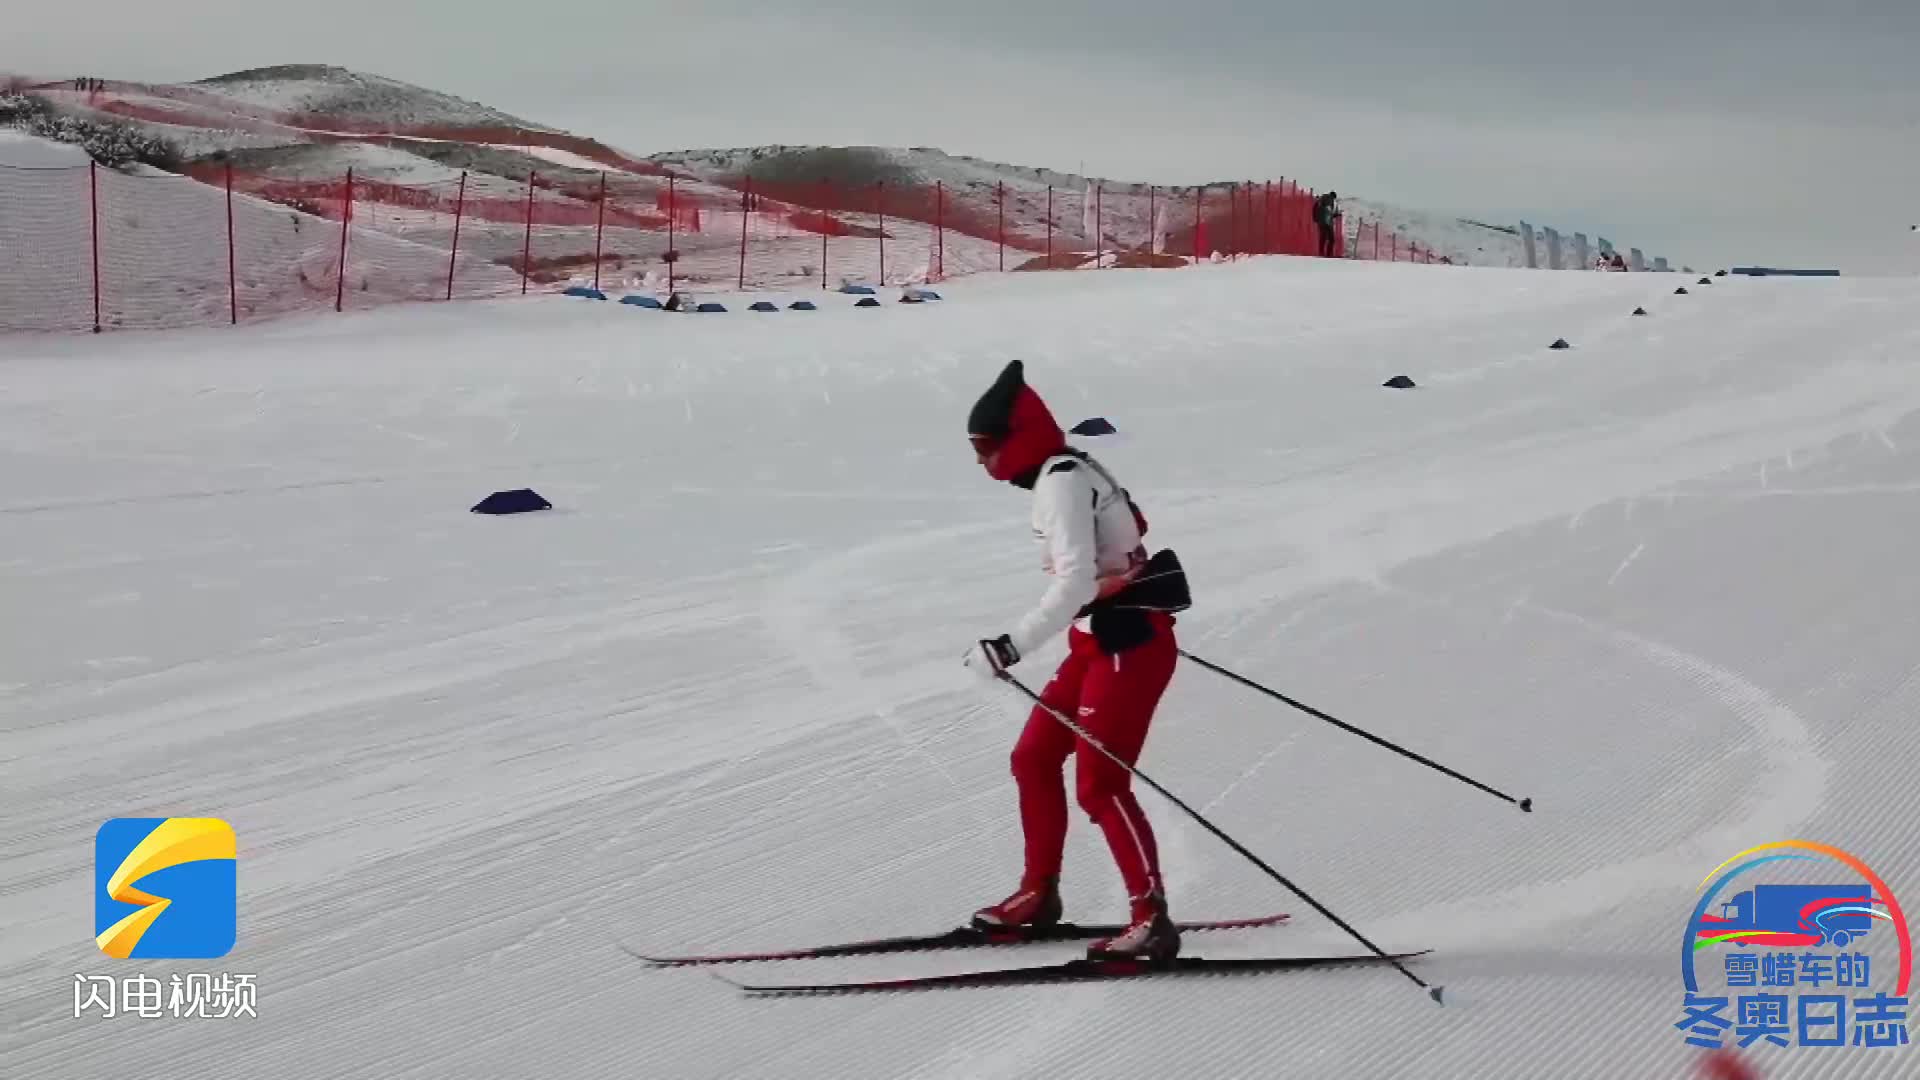 雪蜡车的冬奥日志⑧丨国际雪联越野滑雪积分赛开始 运动员争夺奥运参赛资格